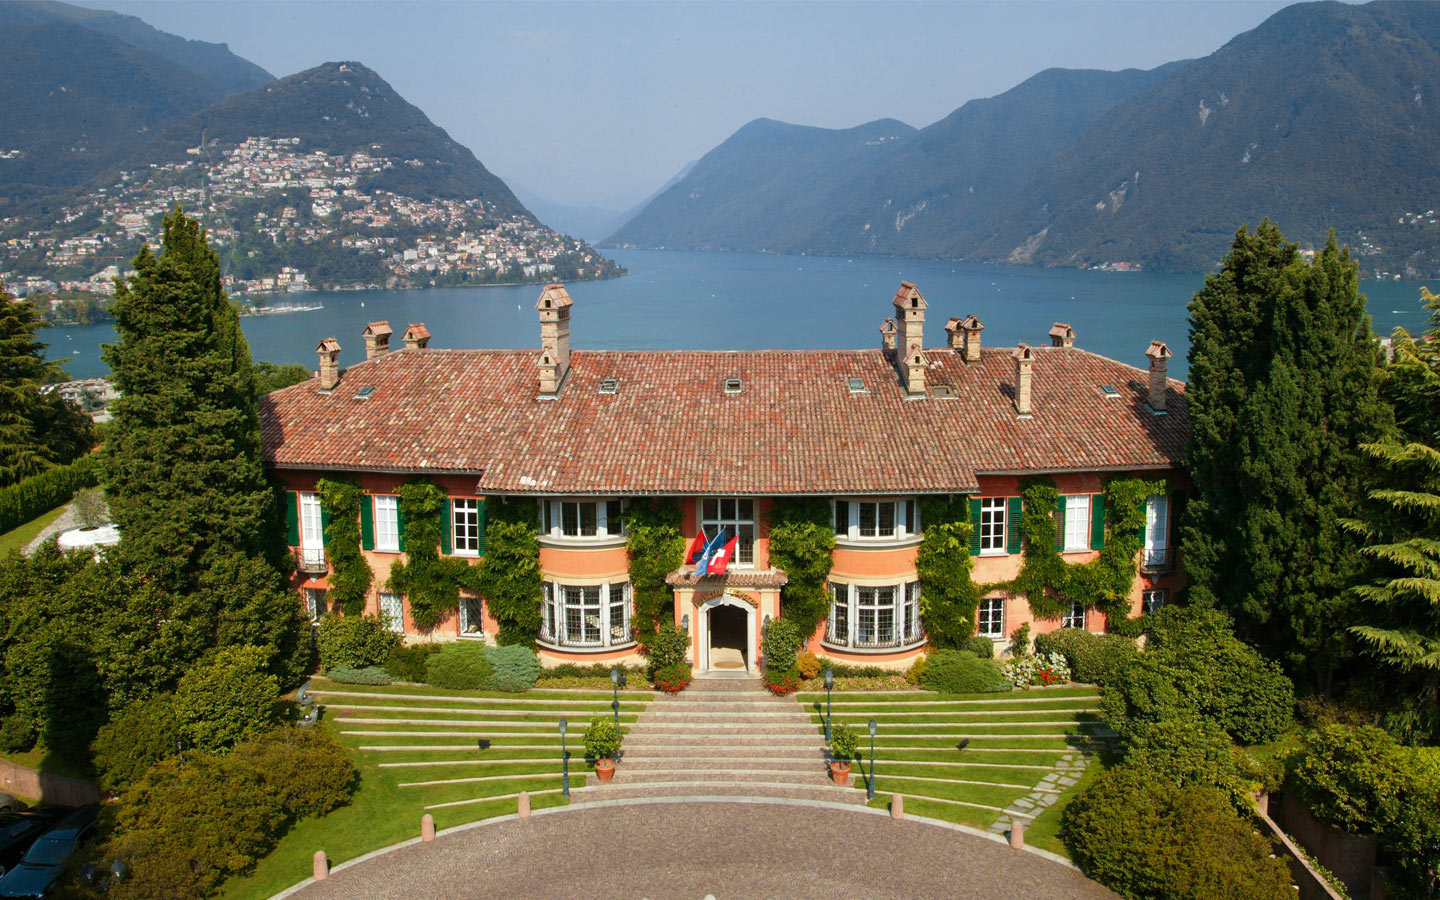 Nuove affiliazioni per le strutture del Ticino Hotels Group